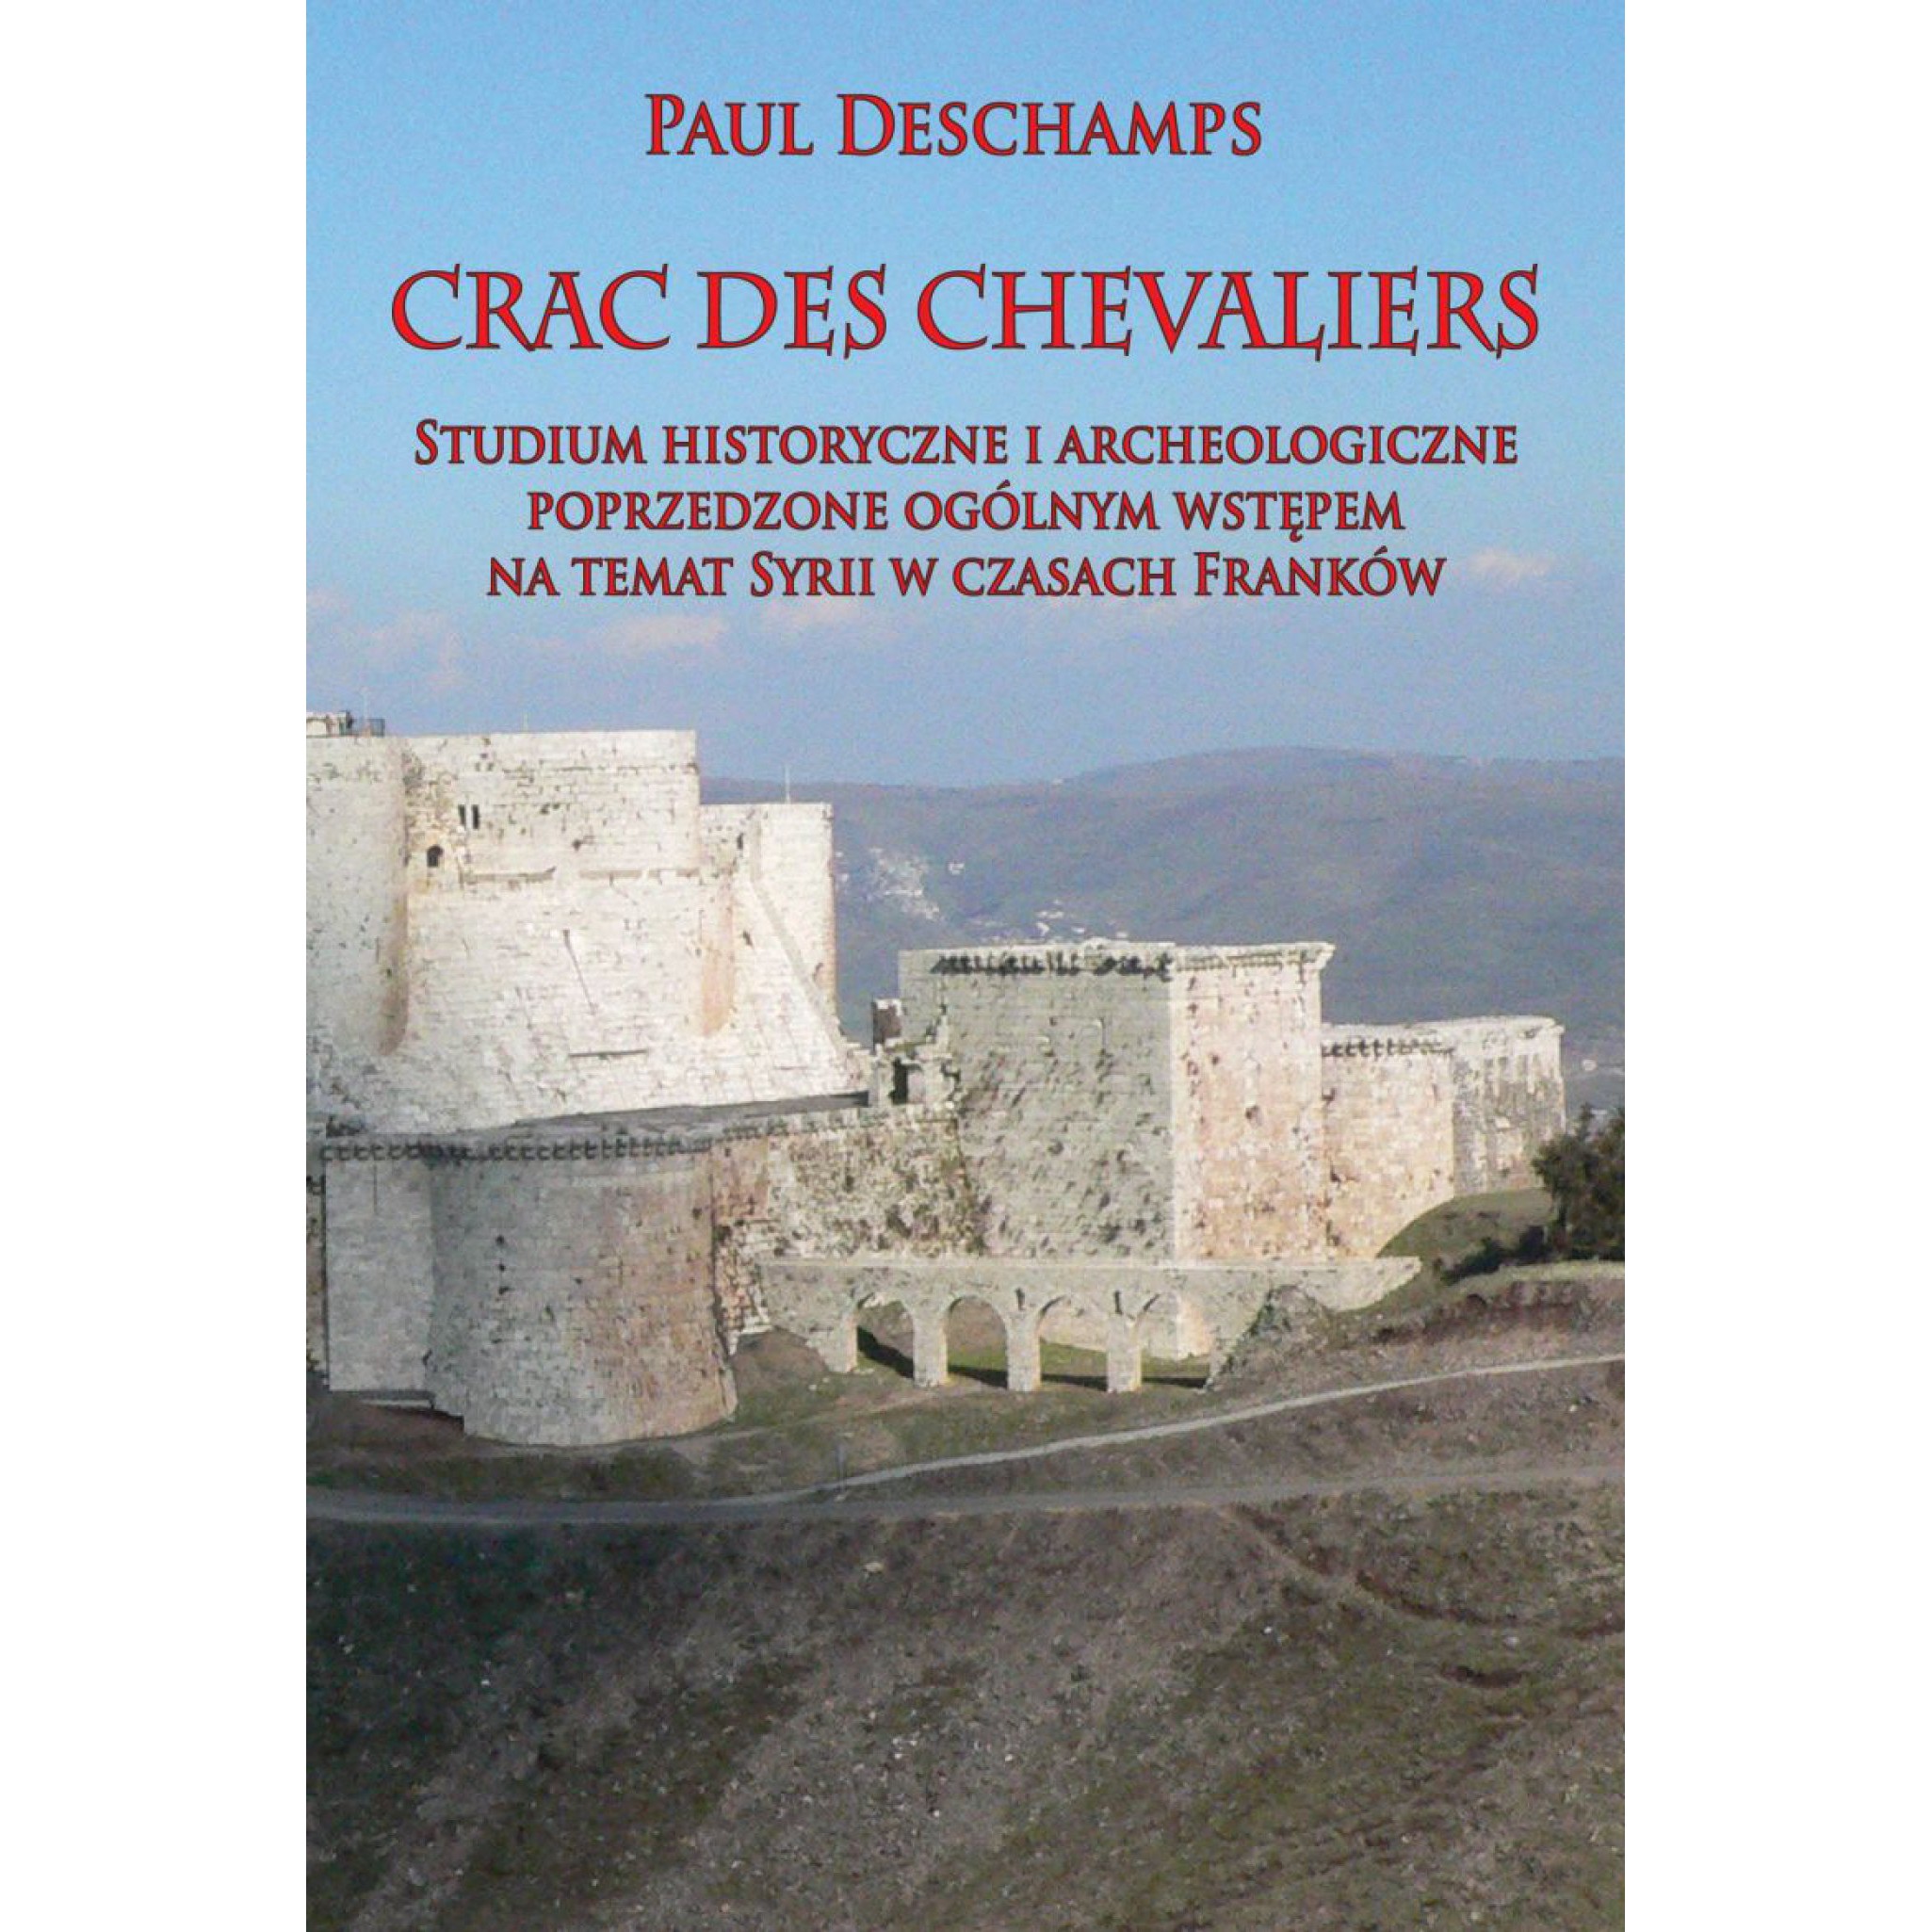 Crac des Chevaliers: Studium historyczne i archeologiczne poprzedzone ogólnym wstępem na temat Syrii w czasach Franków